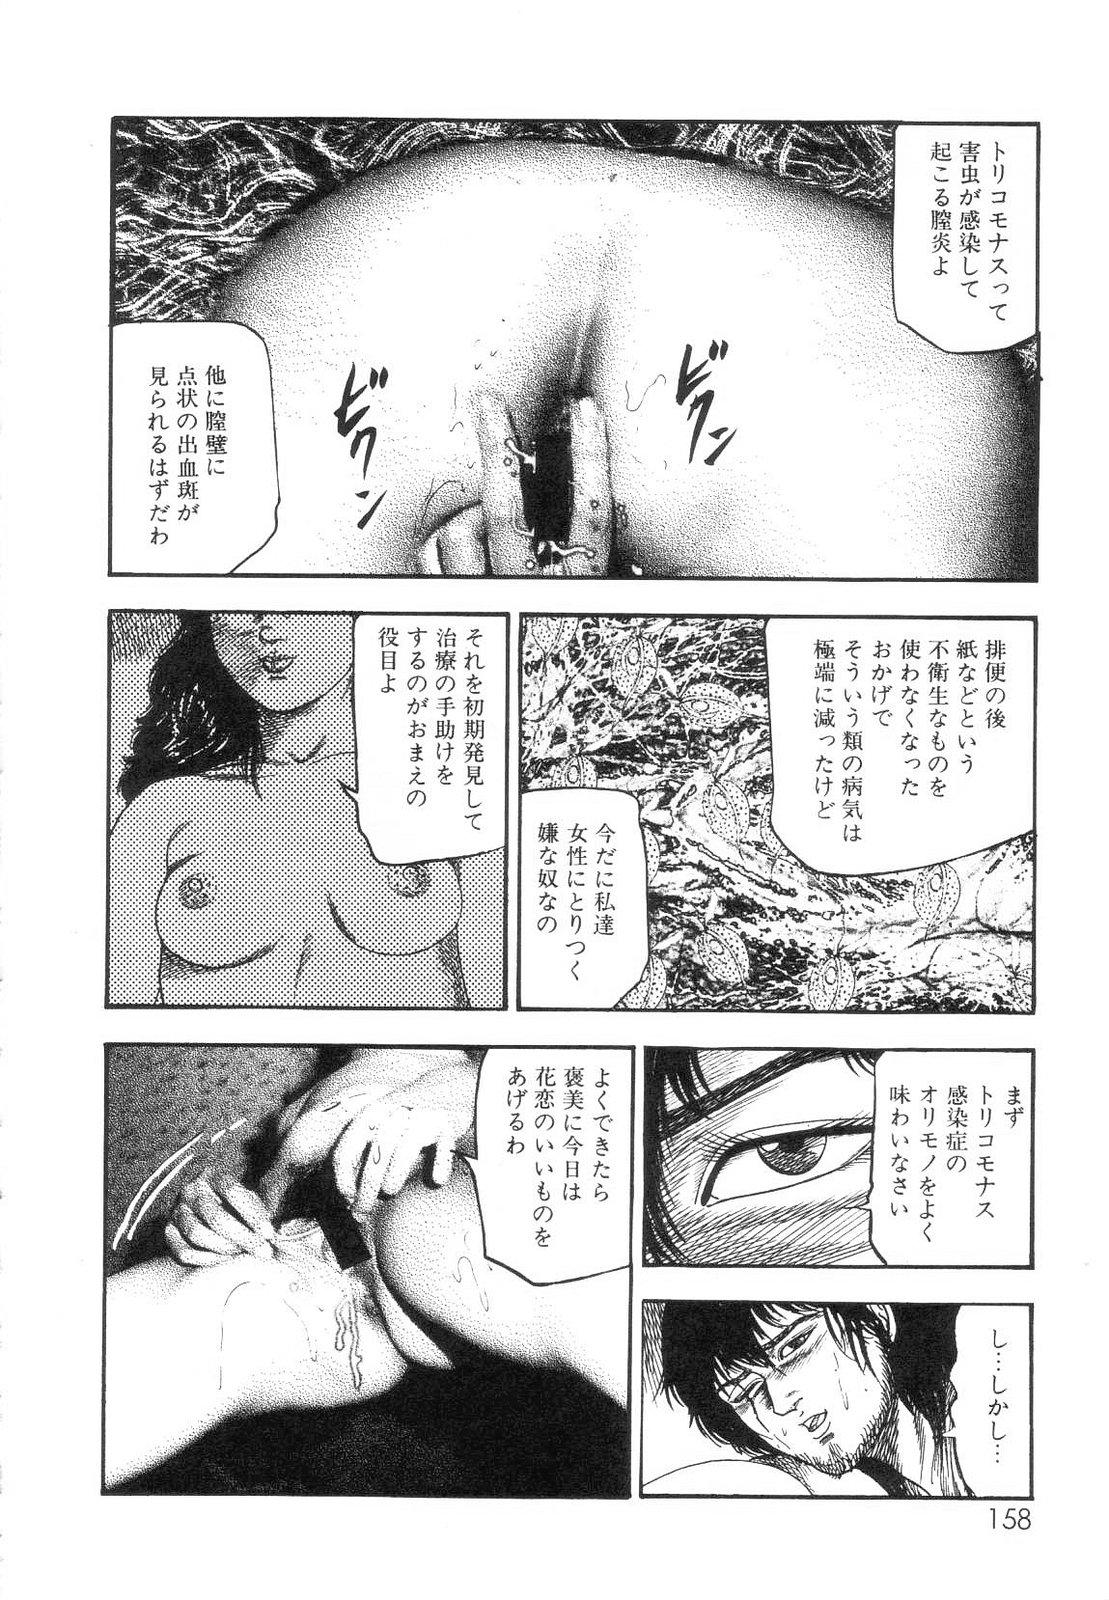 Shiro no Mokushiroku Vol. 7 - Shiiku Ningyou Erika no Shou 159